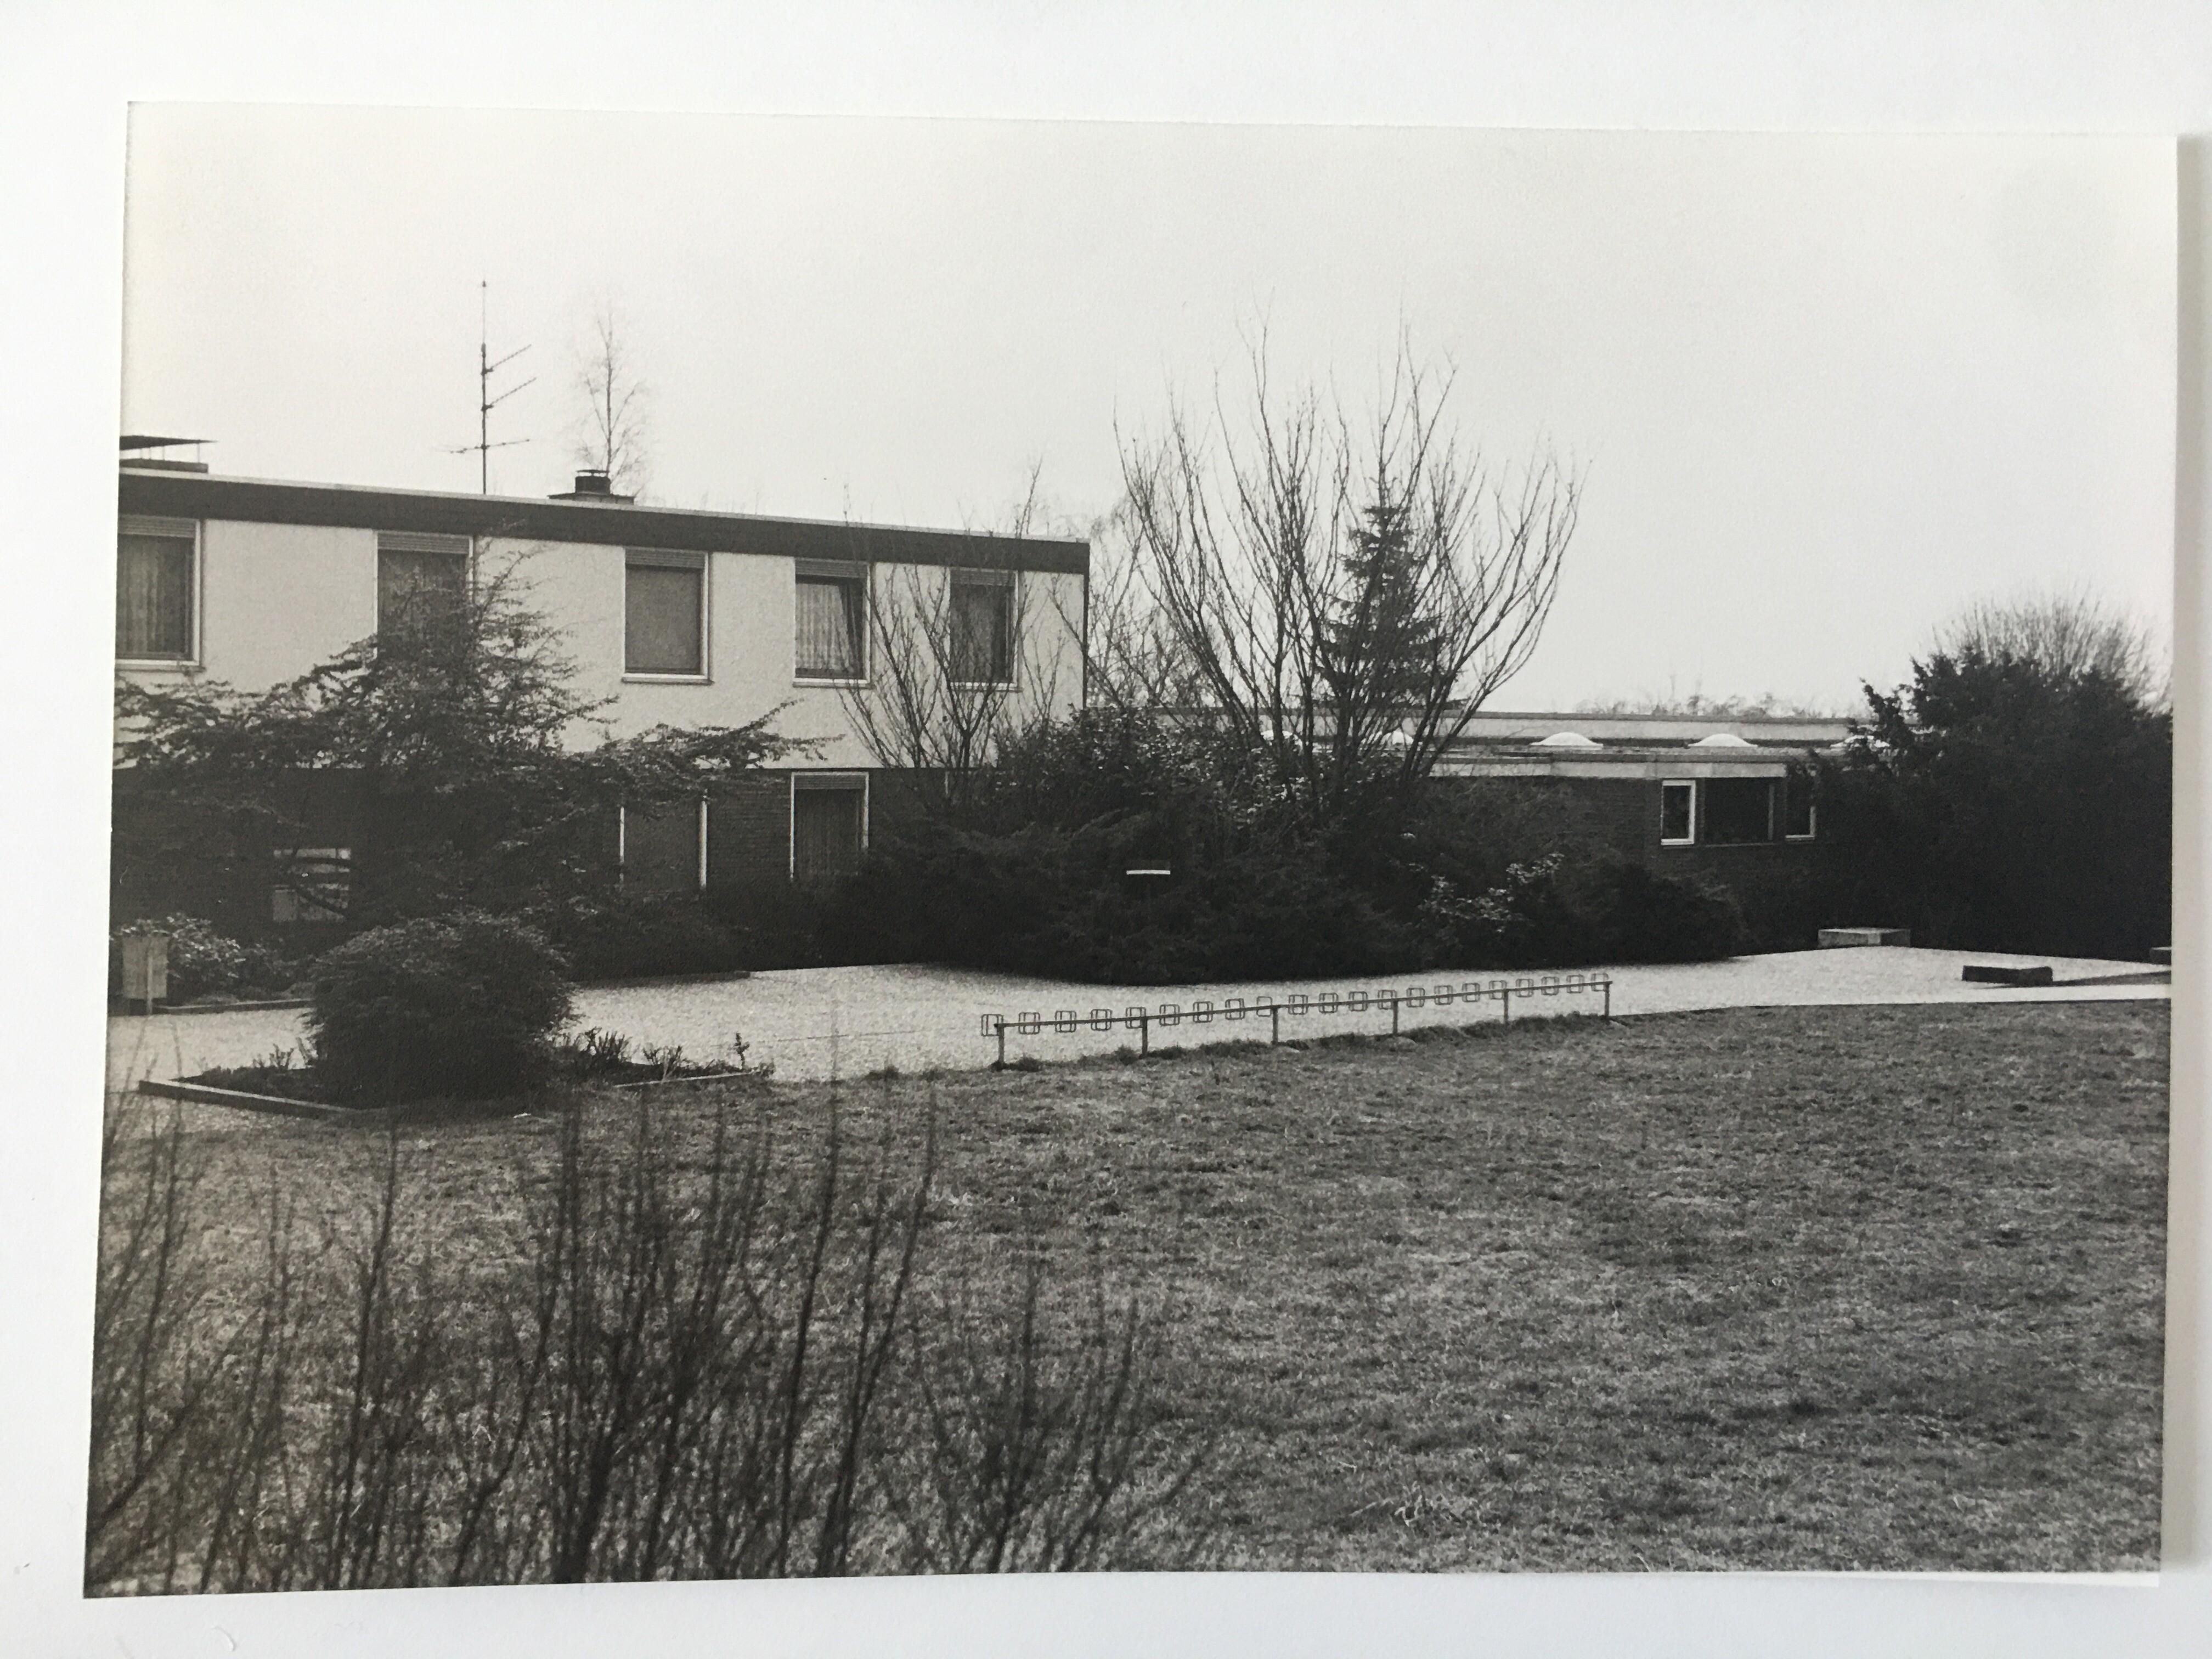 Evangelisches Gemeindezentrum Steinbach, ca. 1980 (Taunus-Rhein-Main - Regionalgeschichtliche Sammlung Dr. Stefan Naas CC BY-NC-SA)